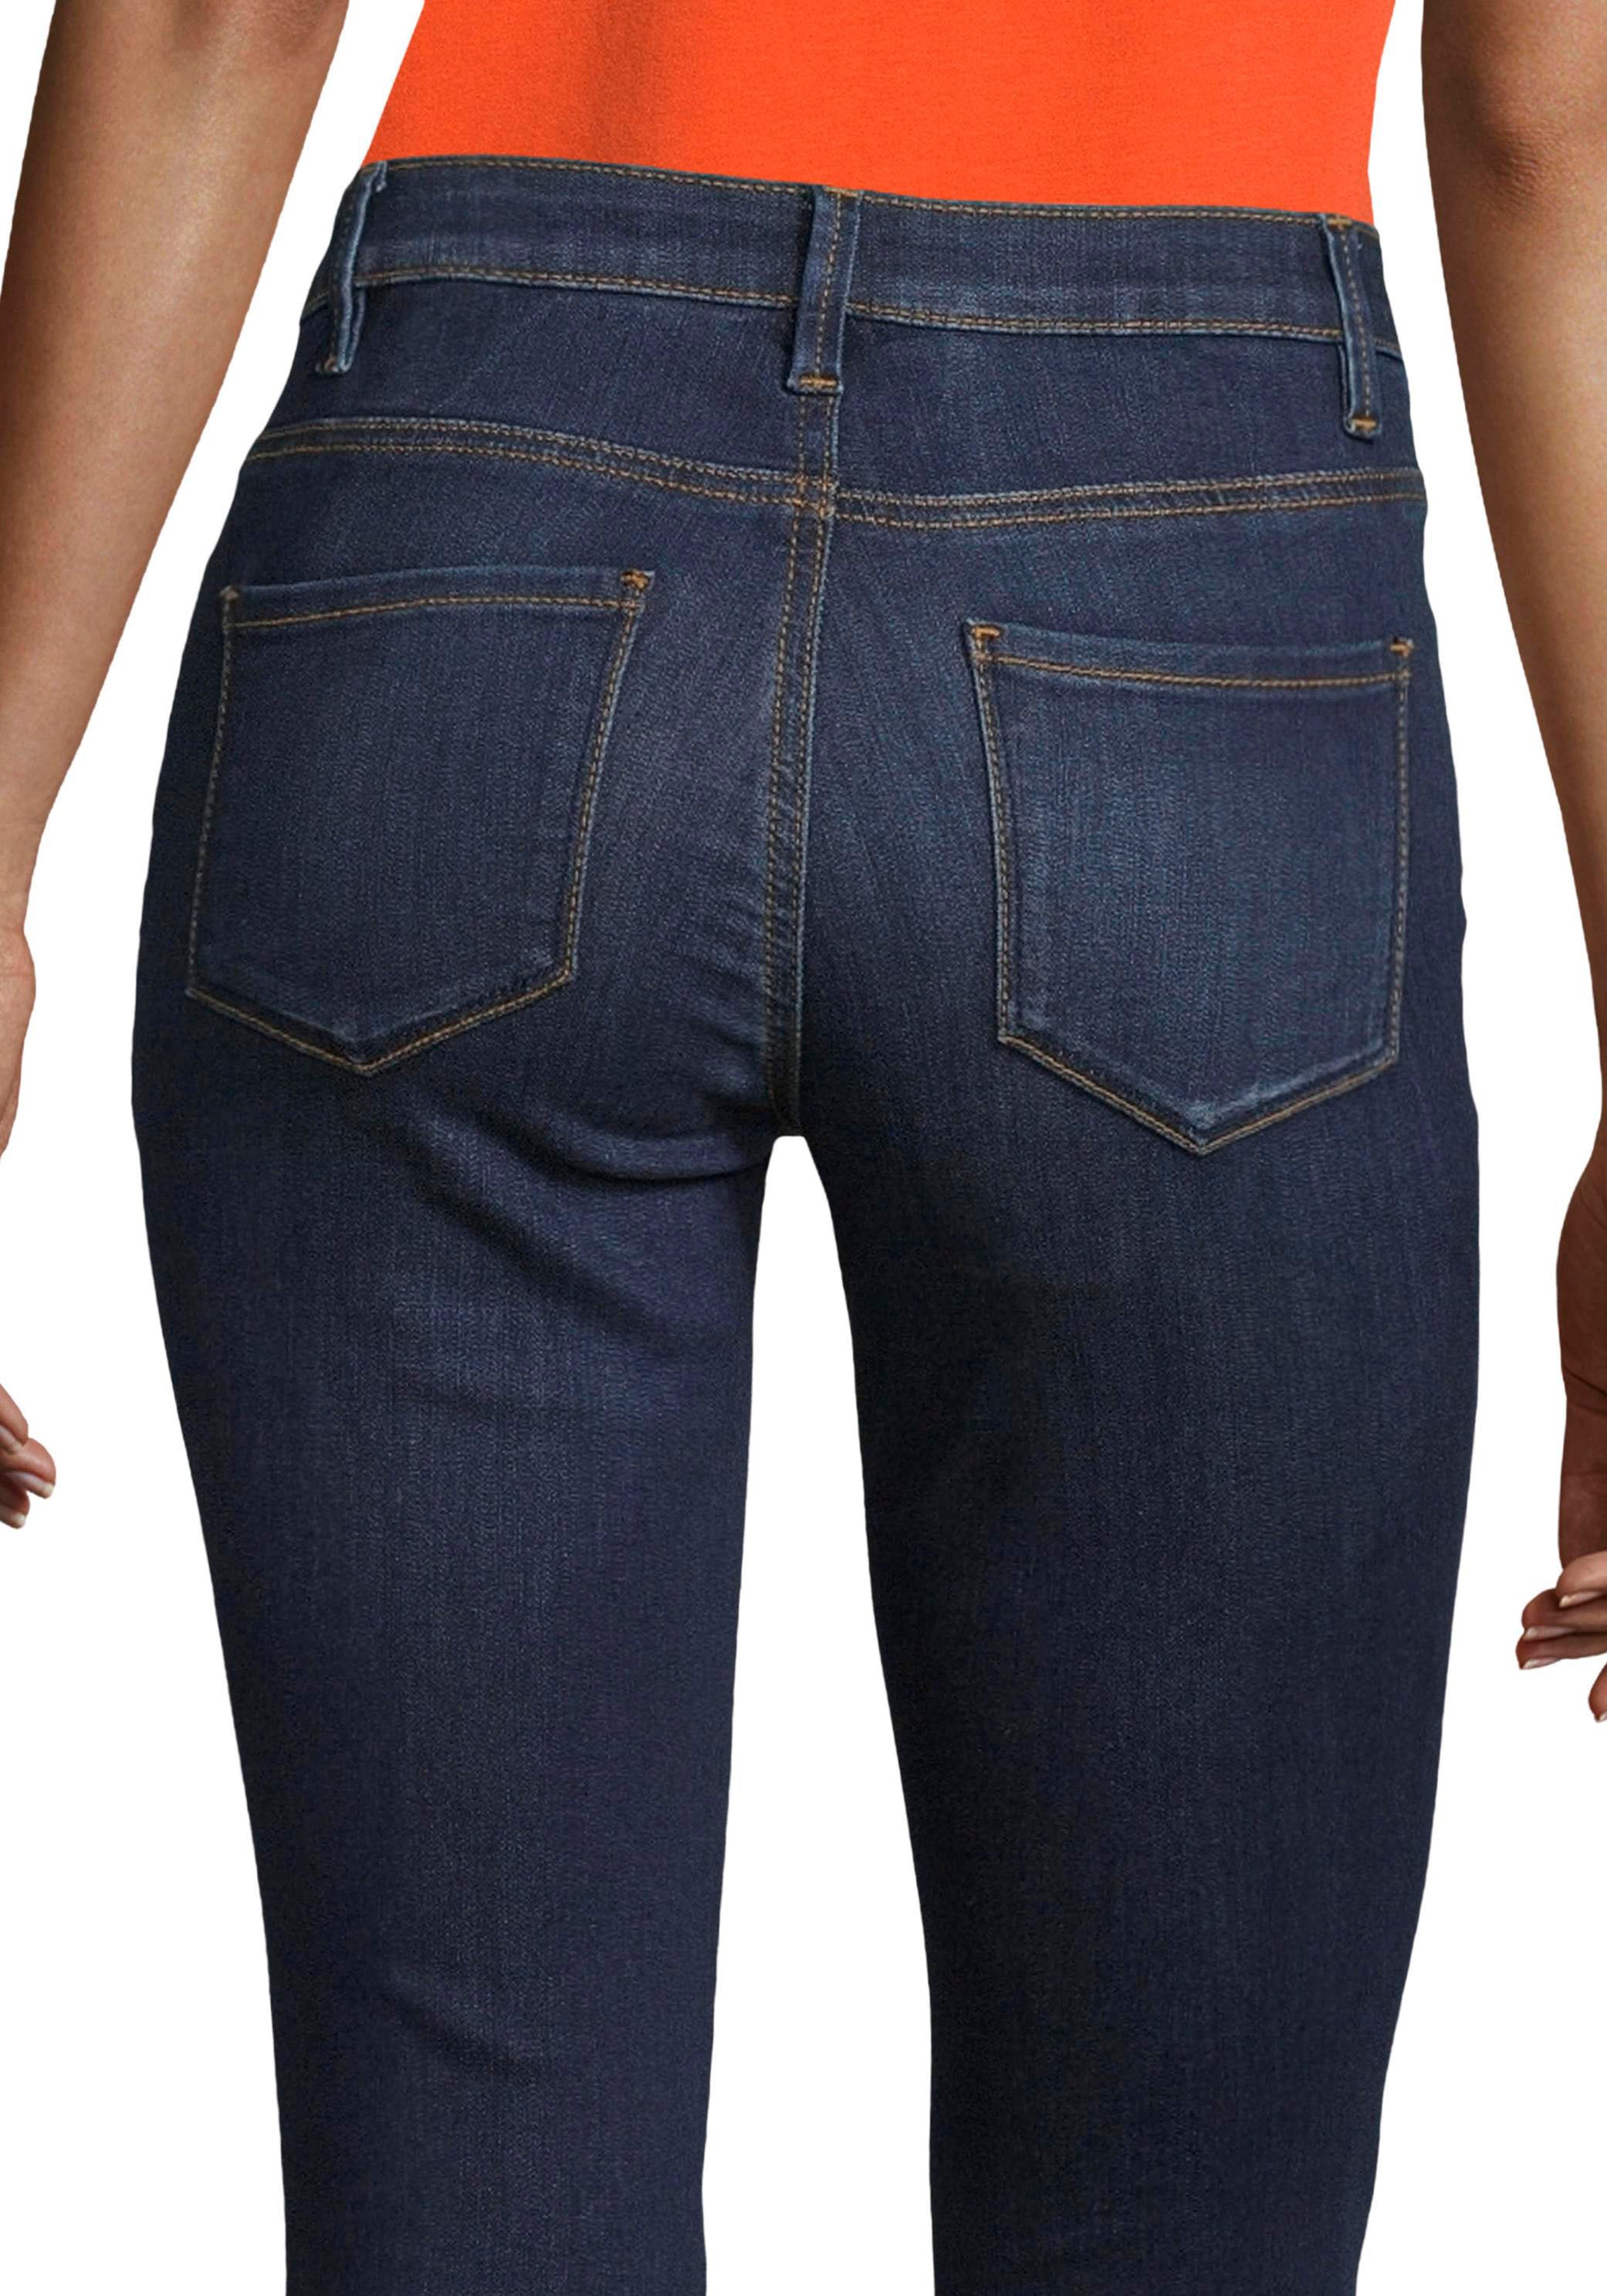 TOM TAILOR Skinny-fit-Jeans, 5-Pocket-Form figurbetonter kaufen günstig in